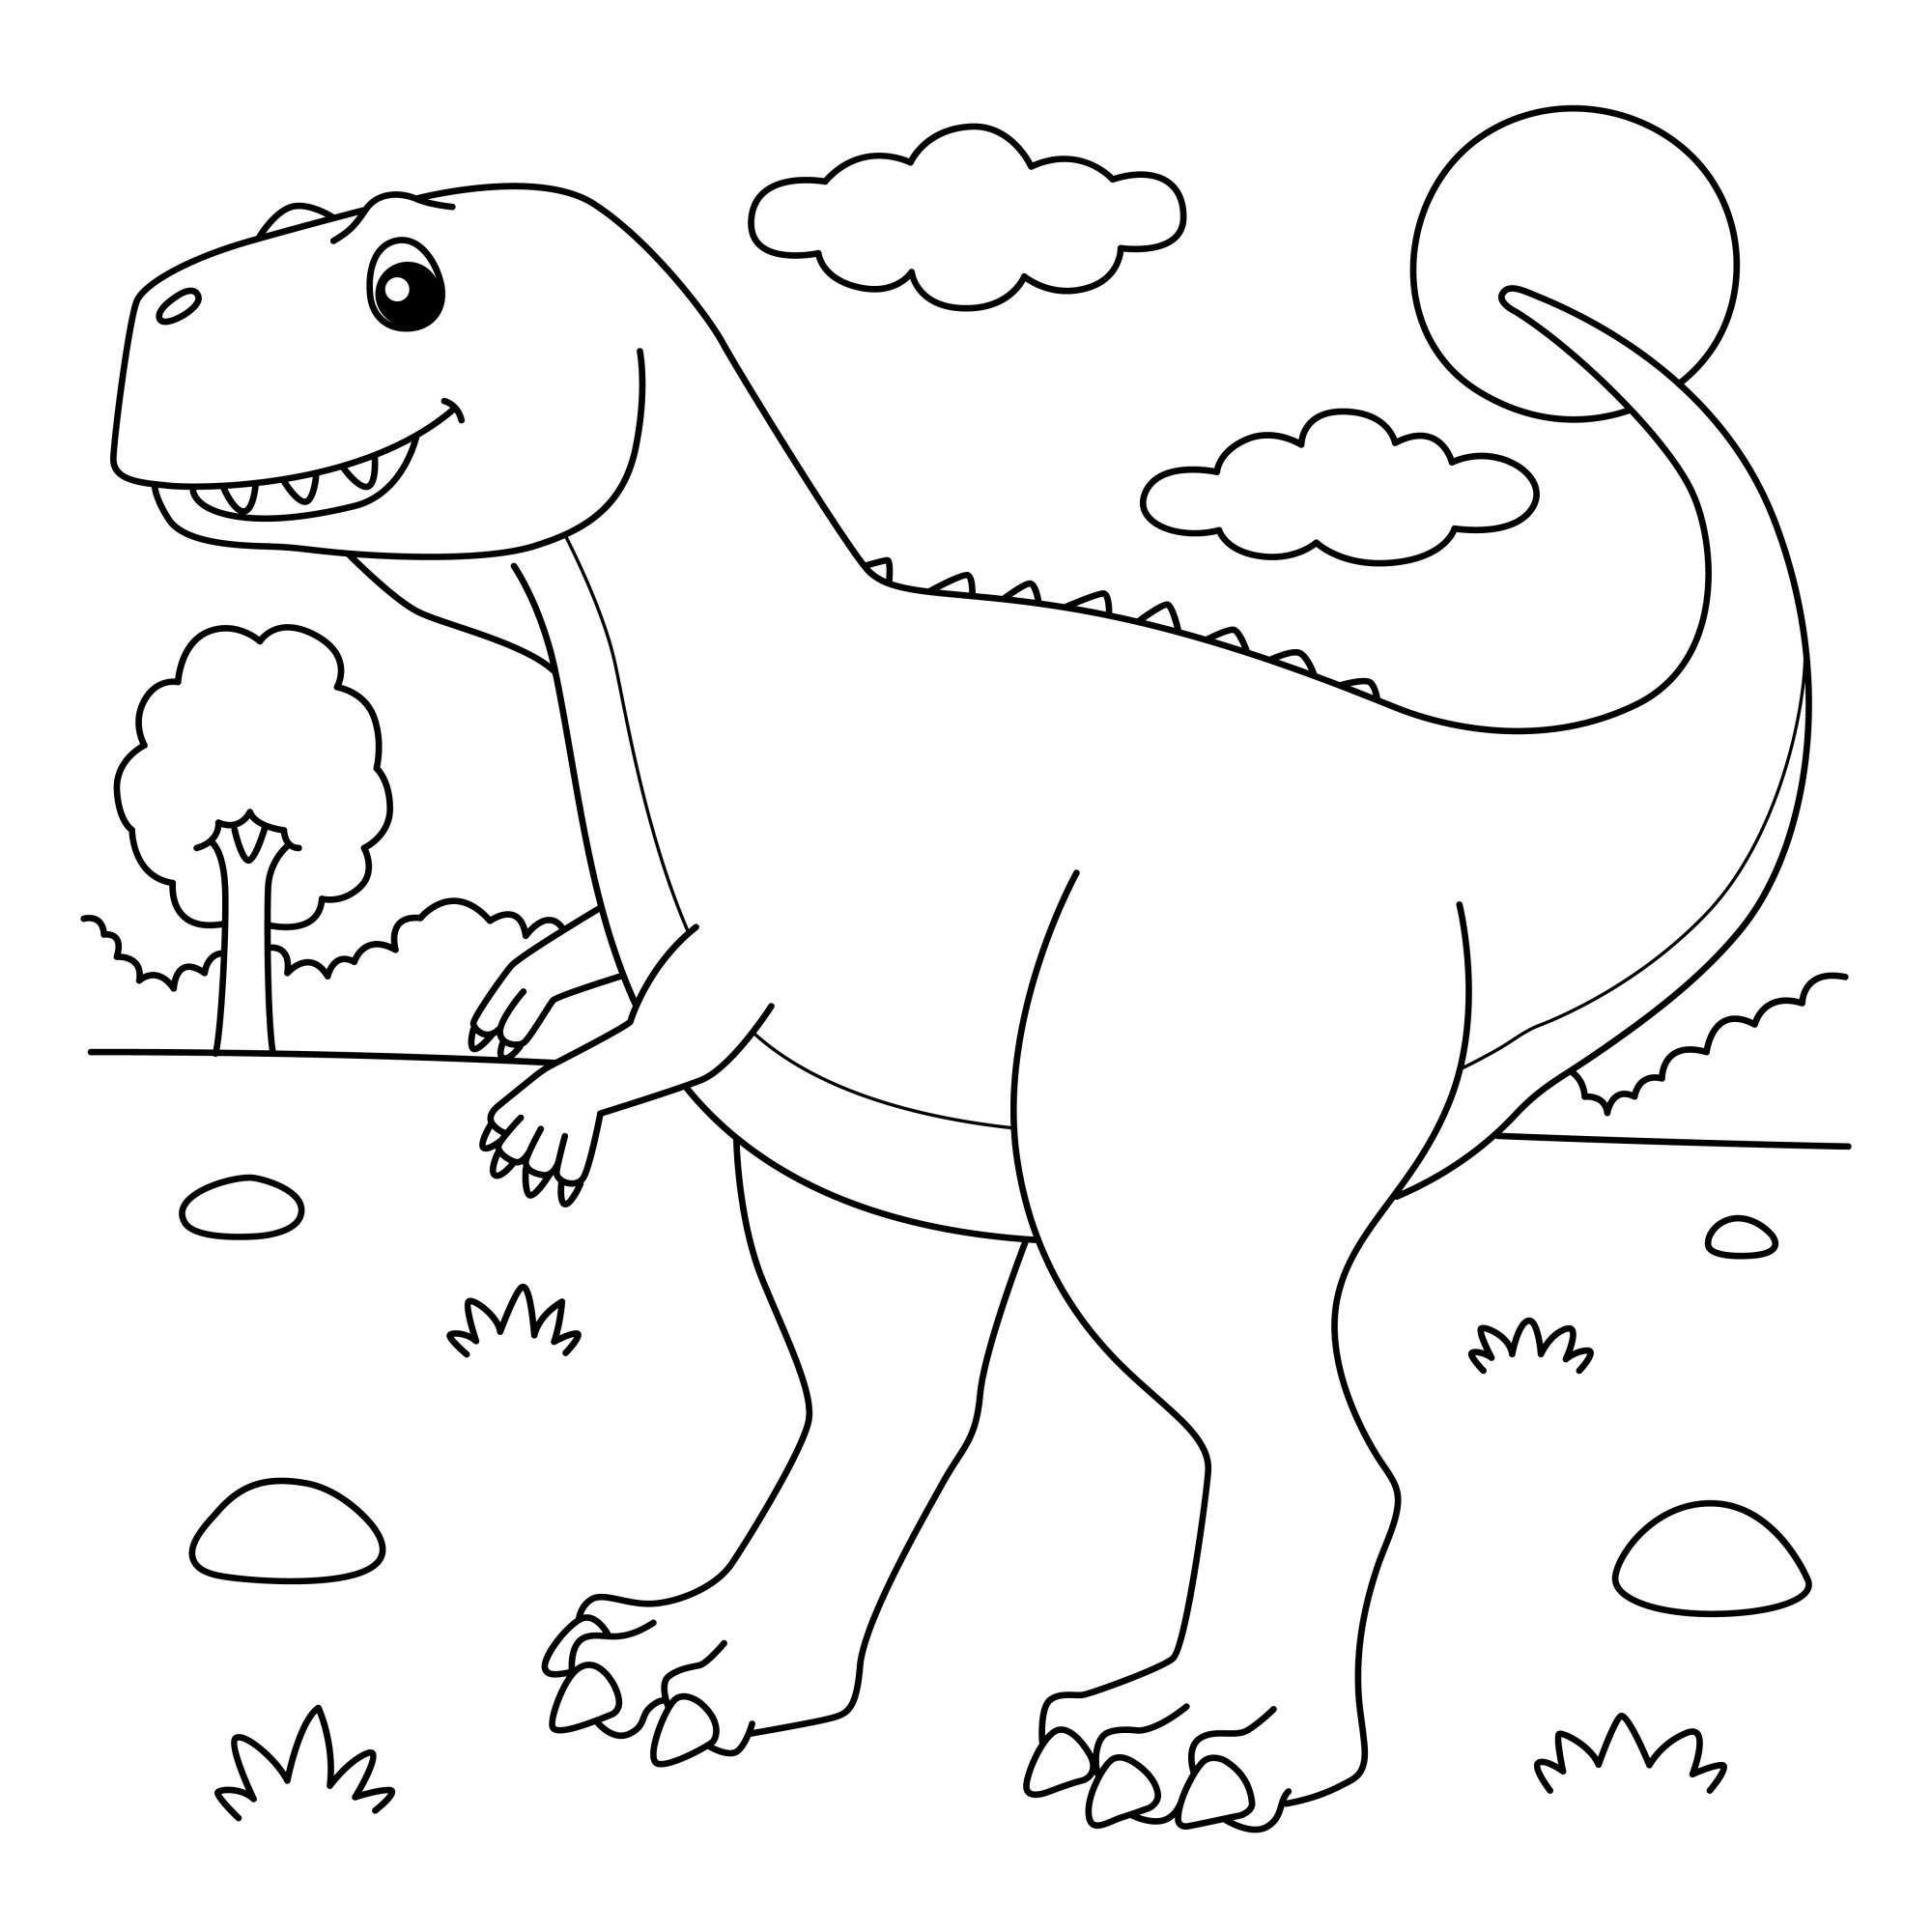 Раскраска для детей: динозавр экриксинатозавр на фоне леса